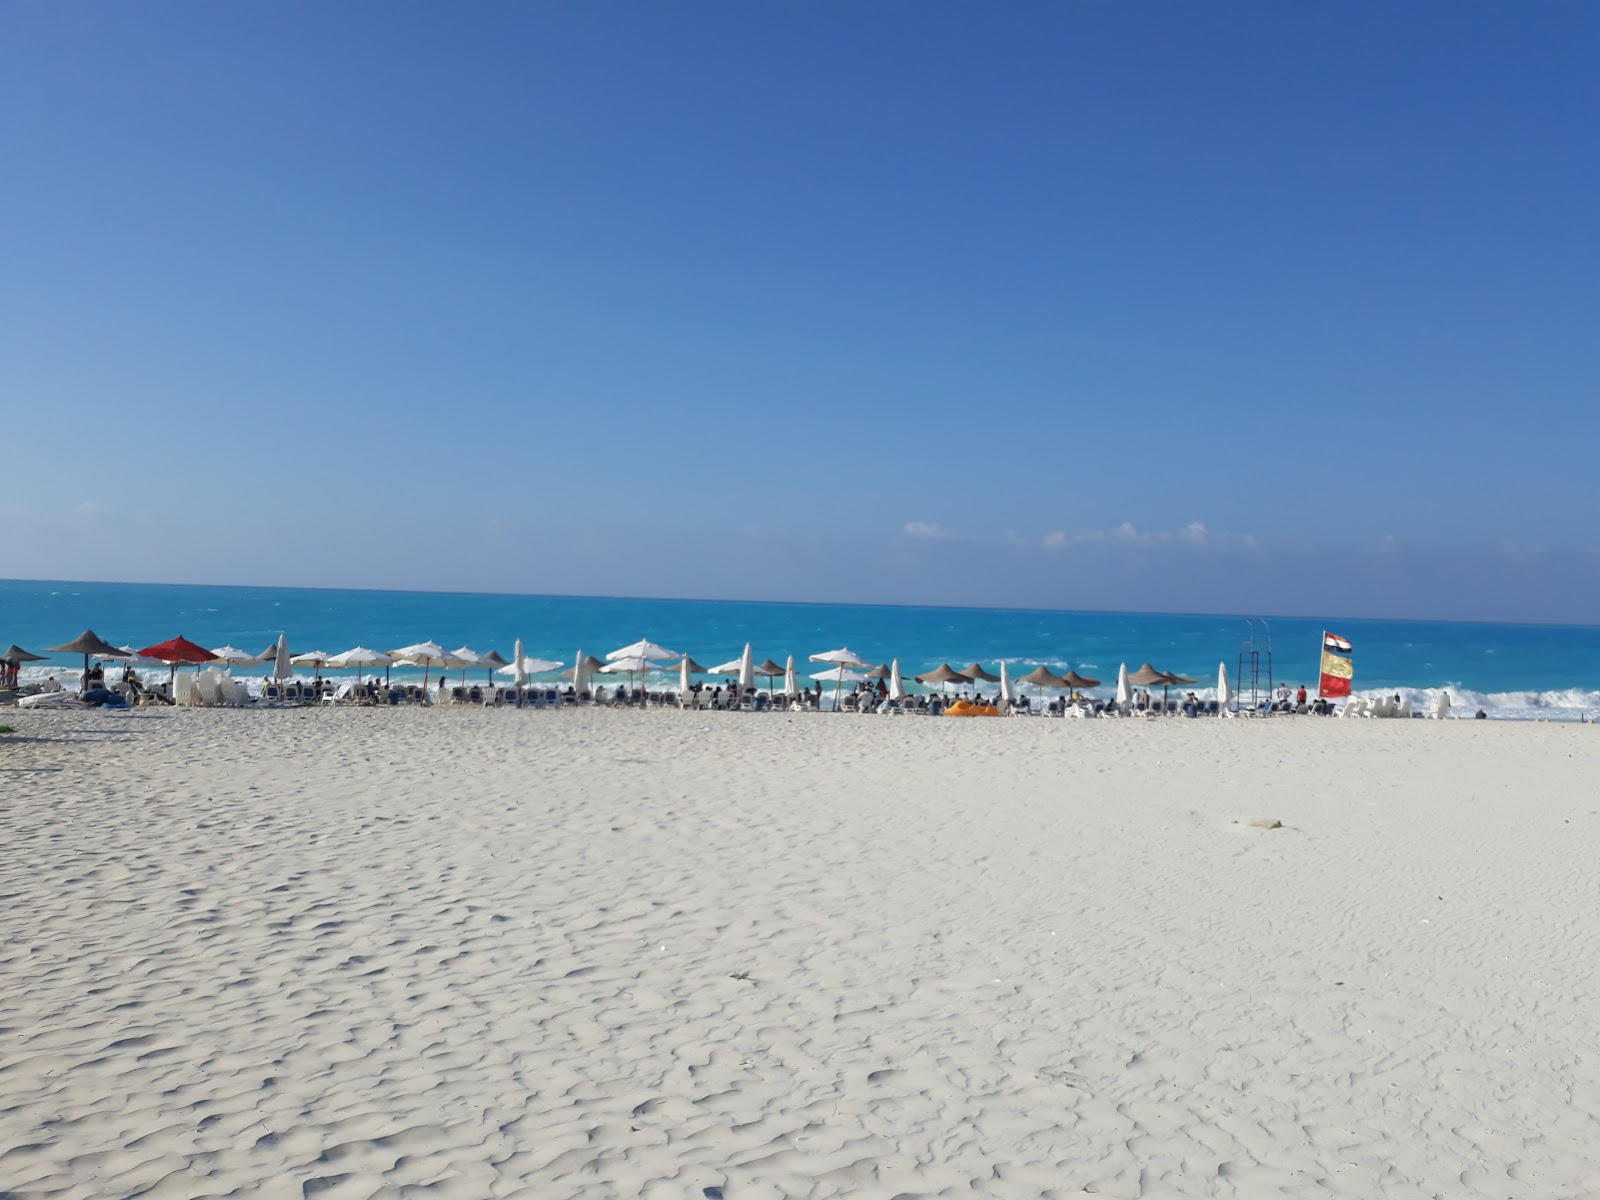 Foto af Assiut University Beach - populært sted blandt afslapningskendere